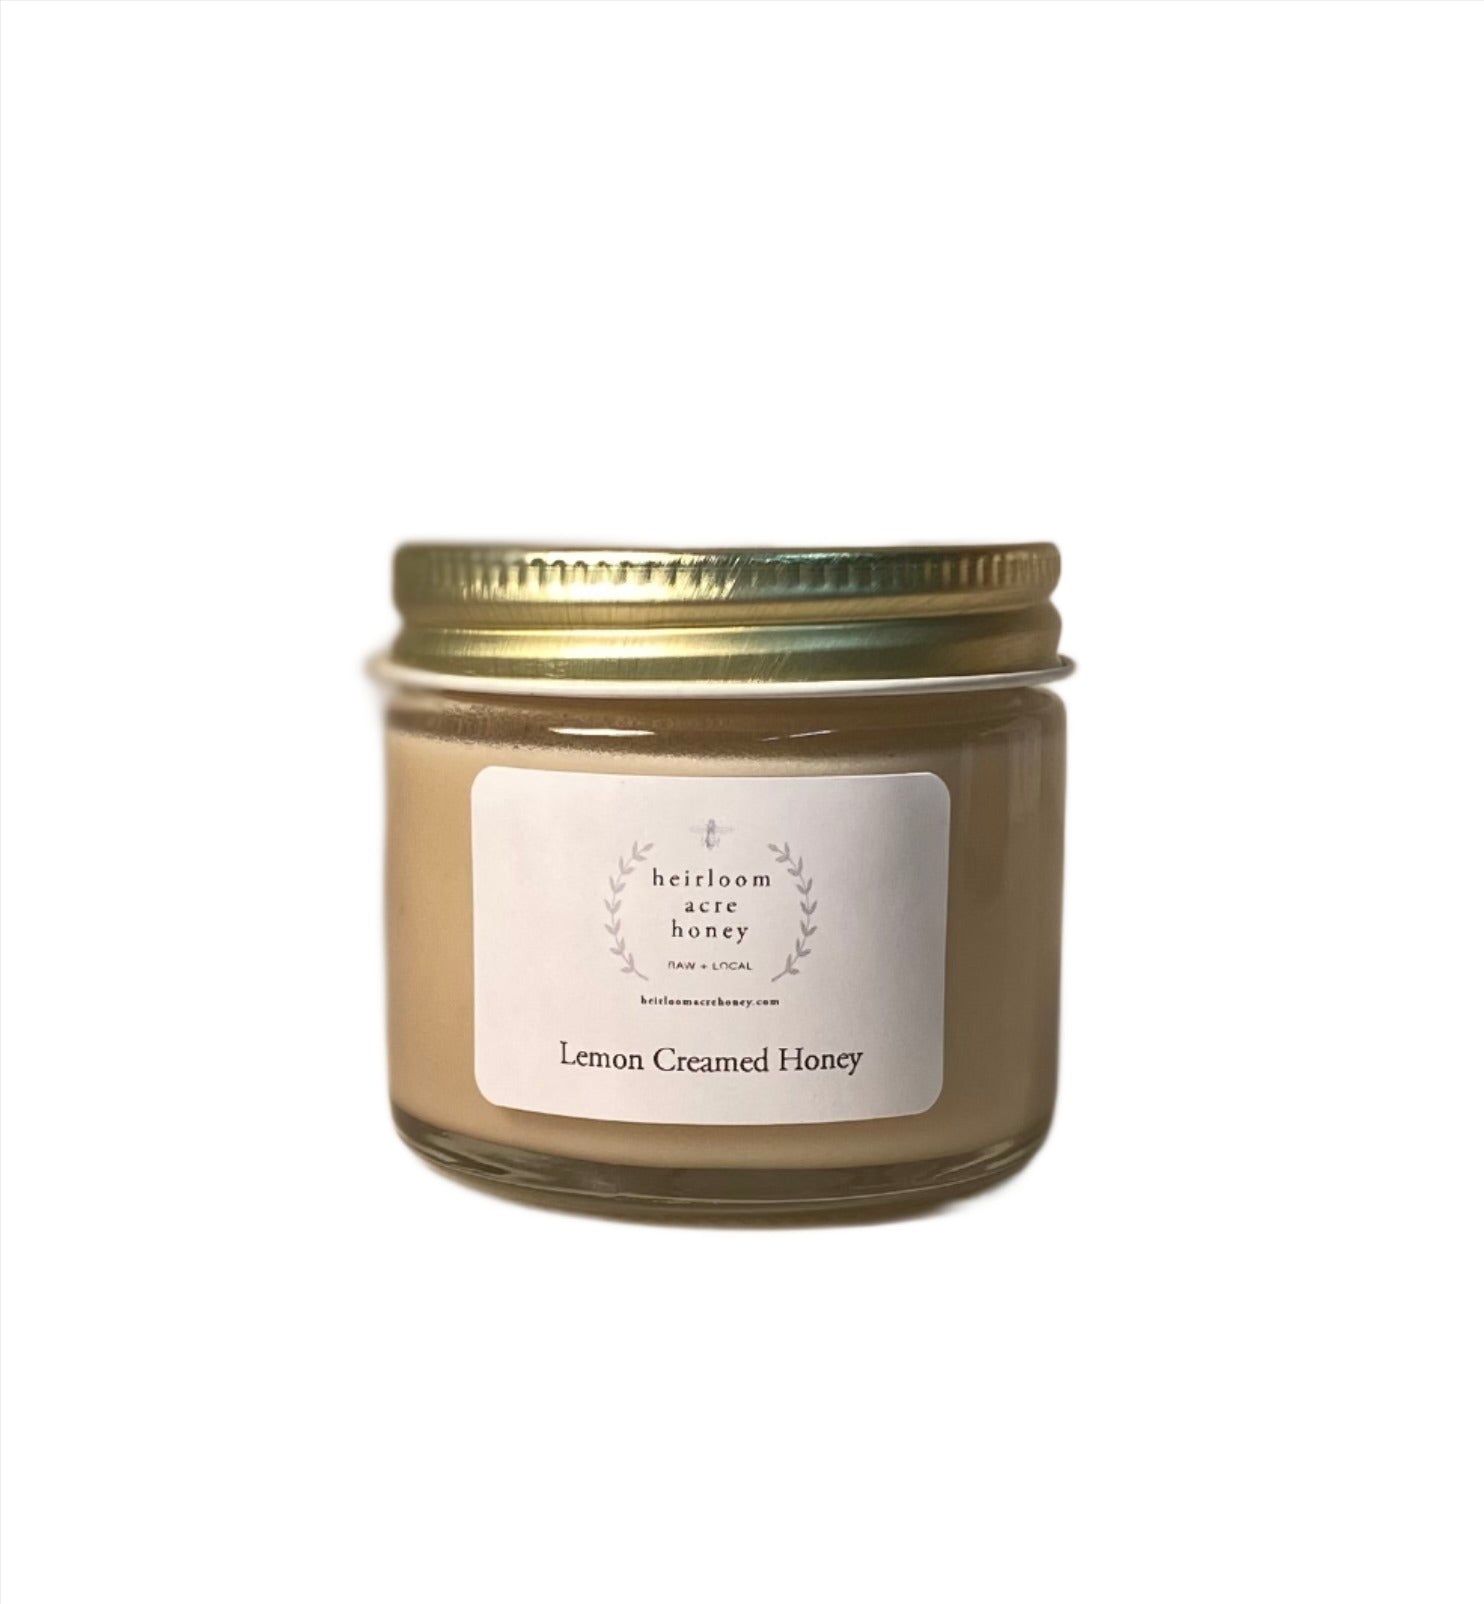 Heirloom Acre Honey - 2oz Mini Lemon Creamed Honey- Olive Oil Etcetera